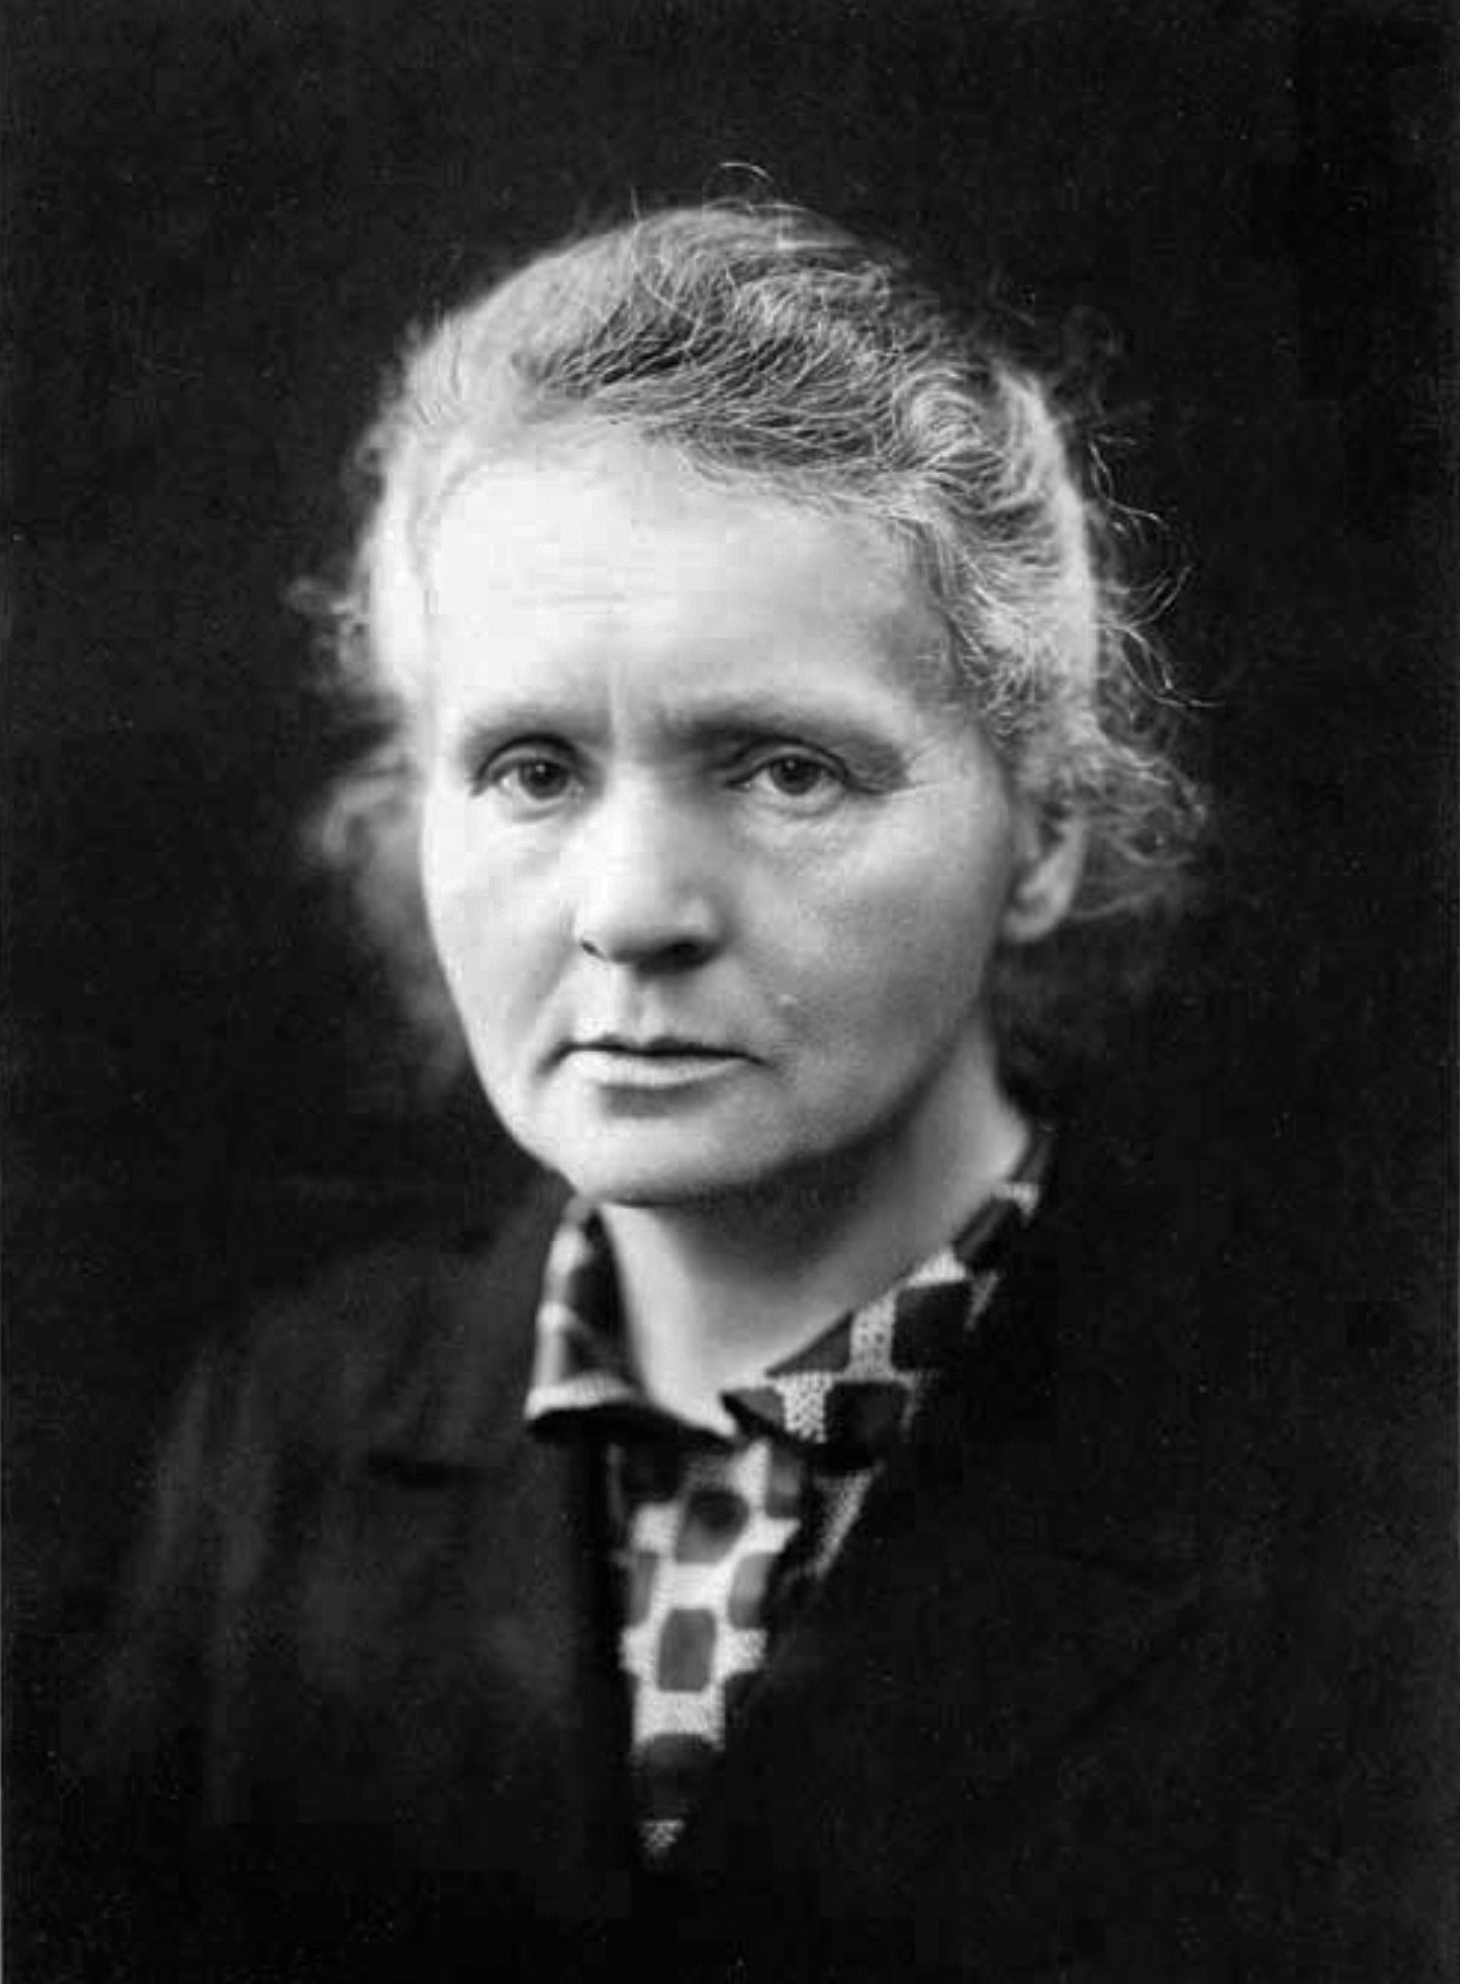 auteur Marie Curie de la citation Après tout, la science est essentiellement internationale, et ce n'est que par manque de sens historique qu'on lui a attribué des qualités nationales.